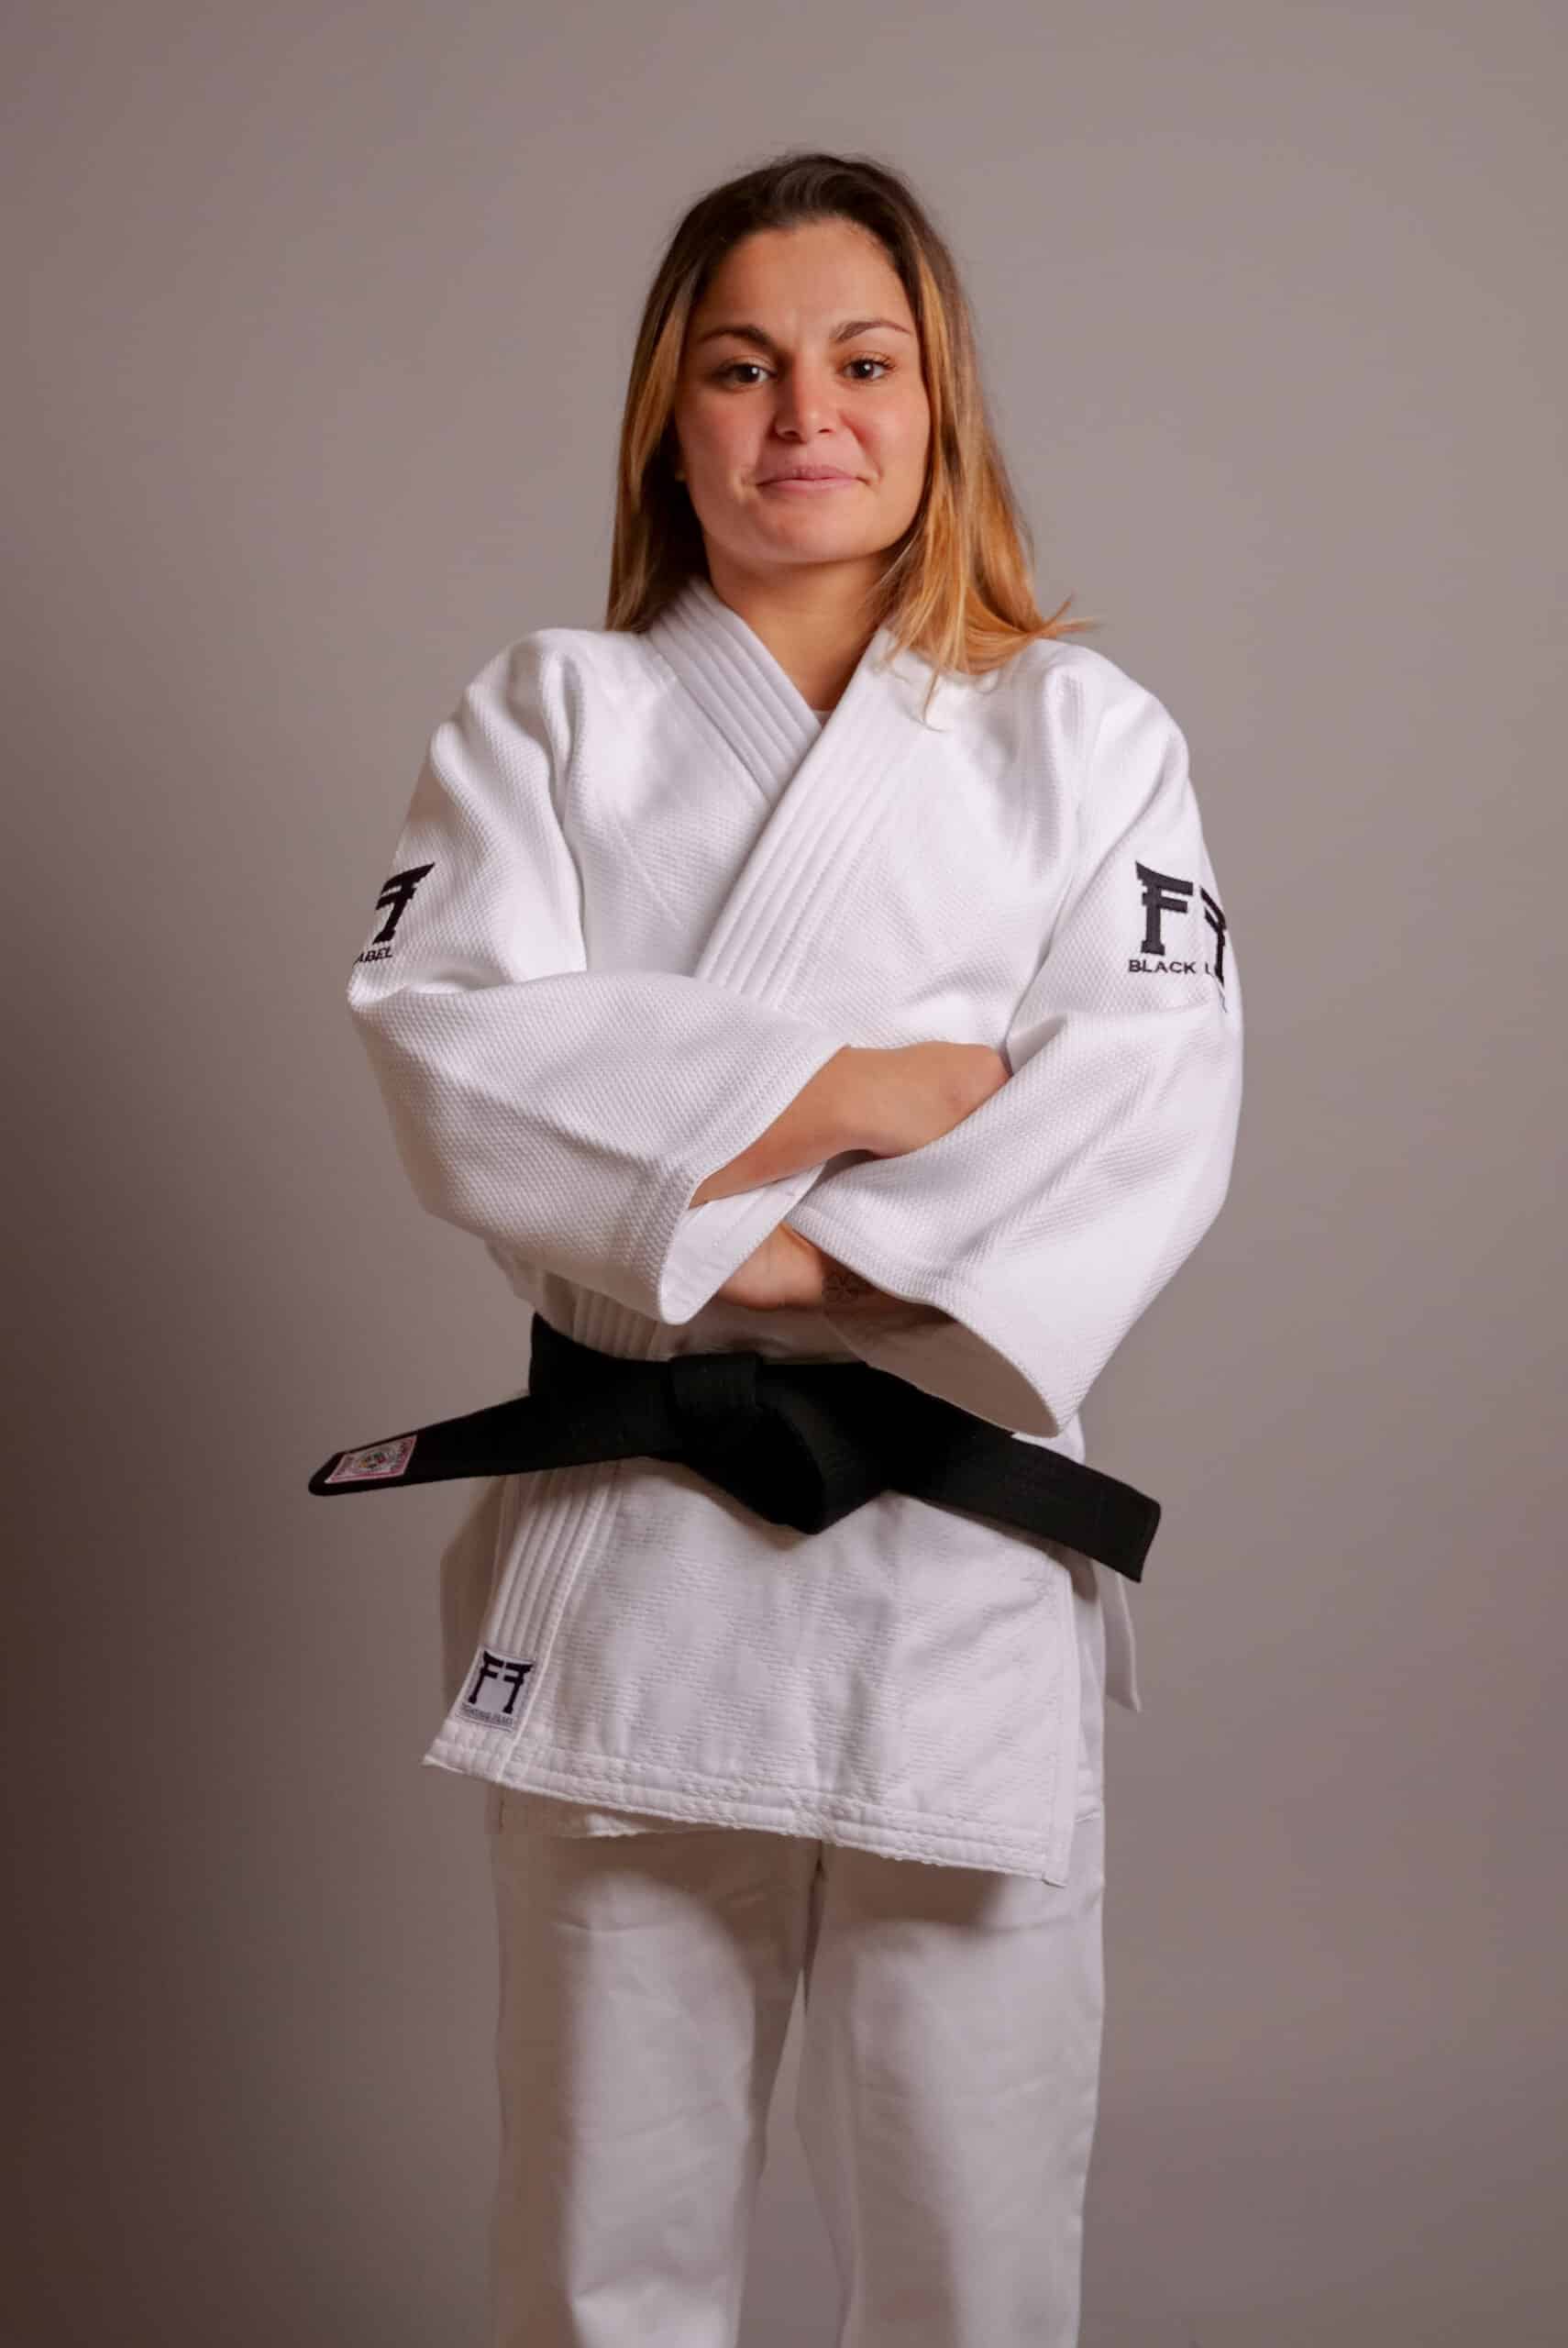 Kimono de Judo Etiqueta Negra 820gr - FightingFilms